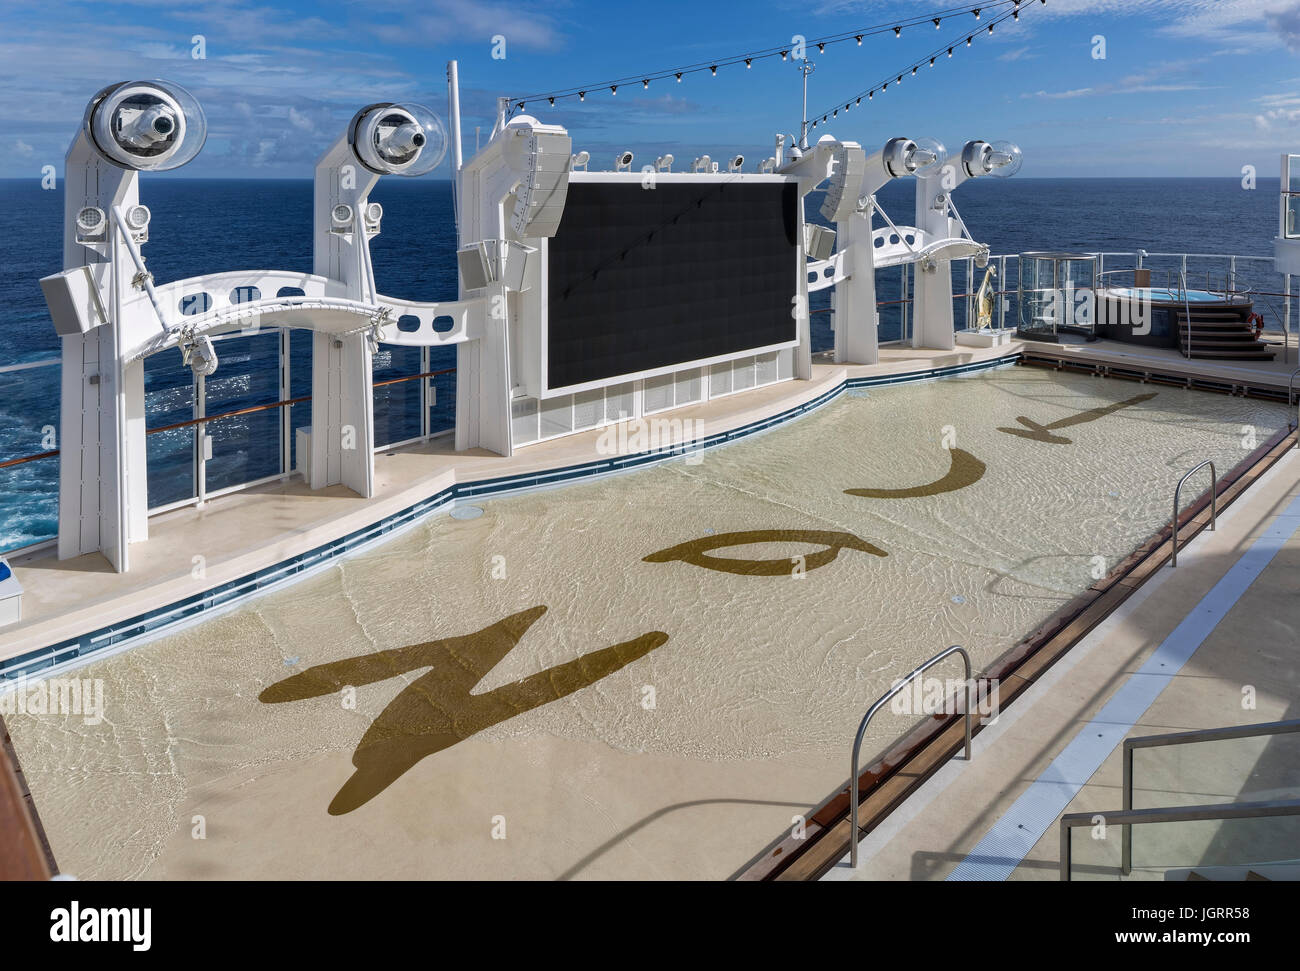 Cinéma en plein air avec piscine. Bateau de croisière de rêve de Genting, AN, Chine. Architecte : SMC Design, 2016. Banque D'Images